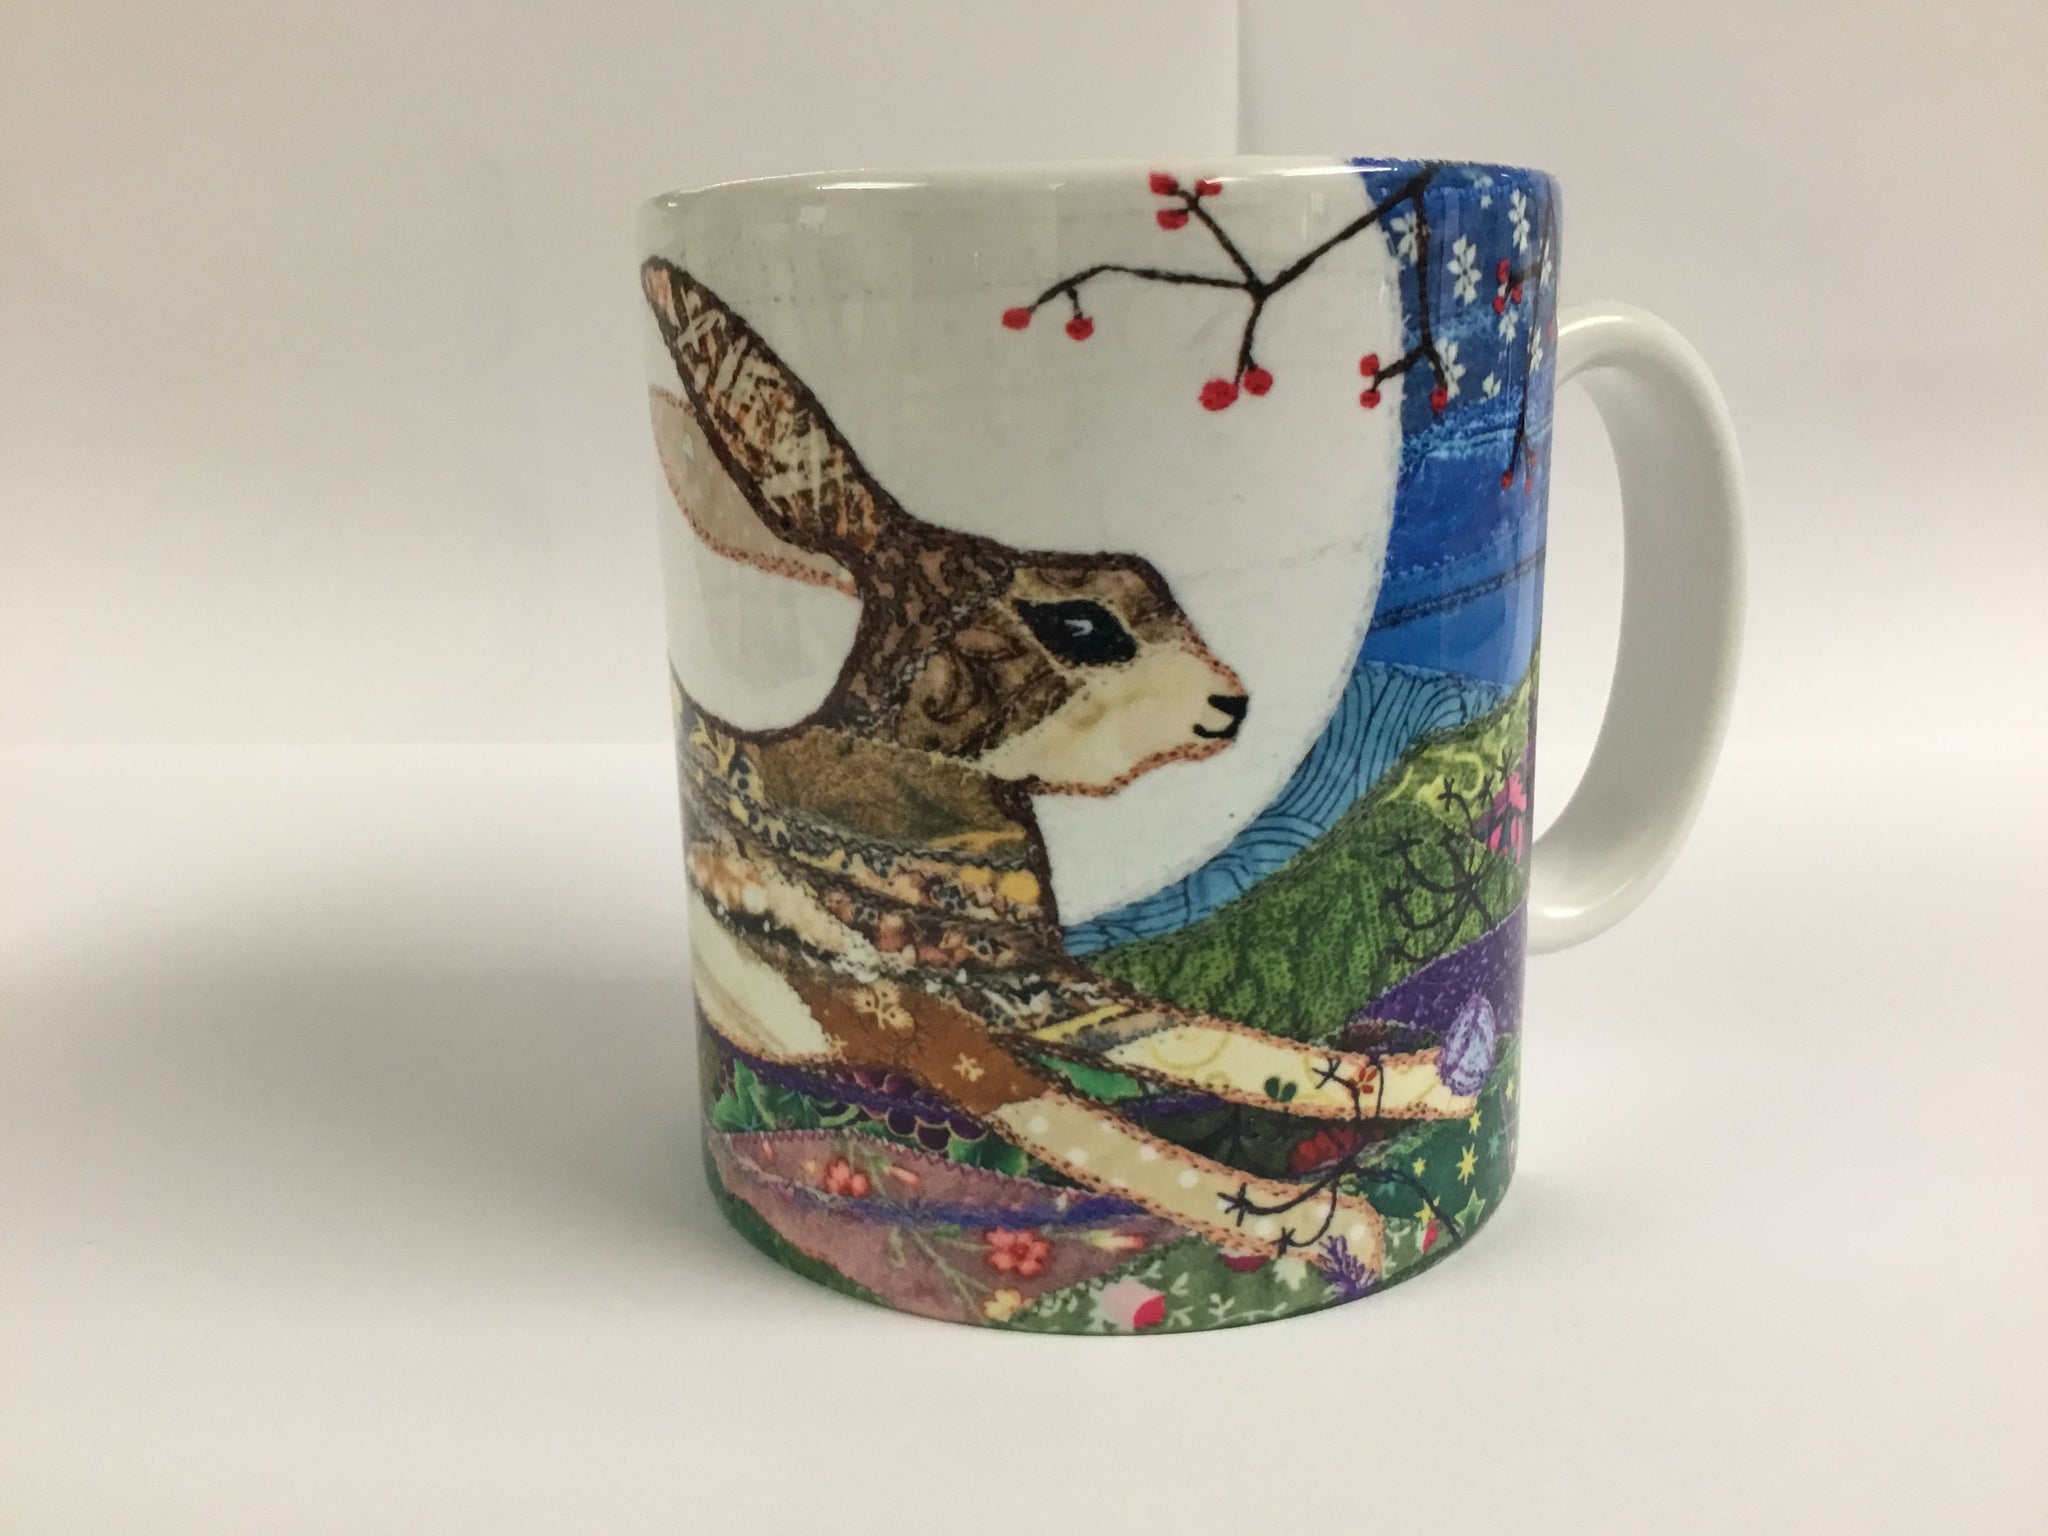 'Moonlit Hare' Mug by Josie Russell